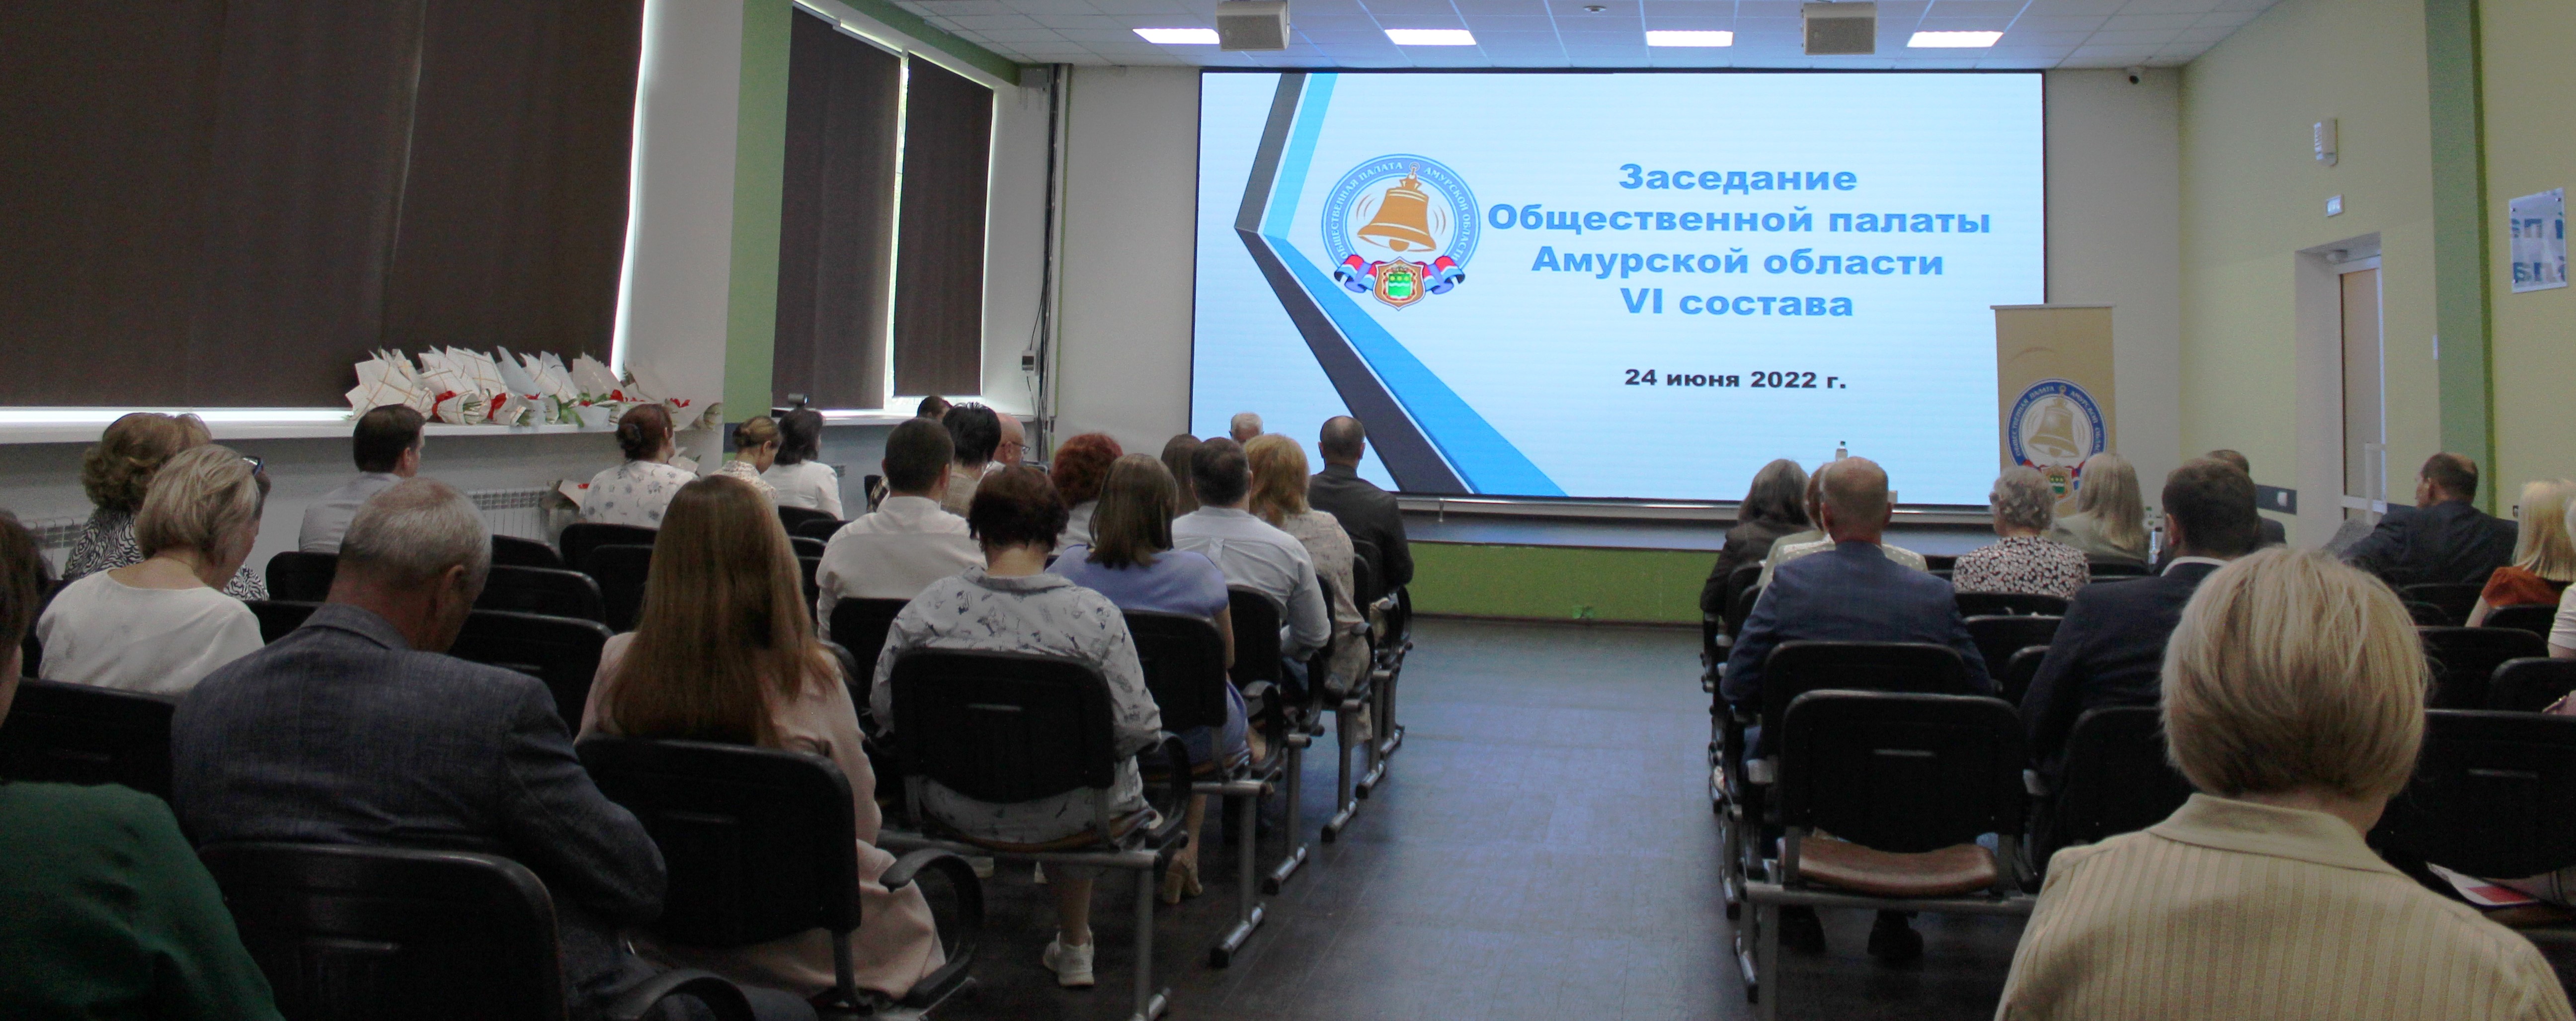 Доклад о состоянии и развитии институтов гражданского общества за 2021 год обсудили на заседании Общественной палаты Амурской области